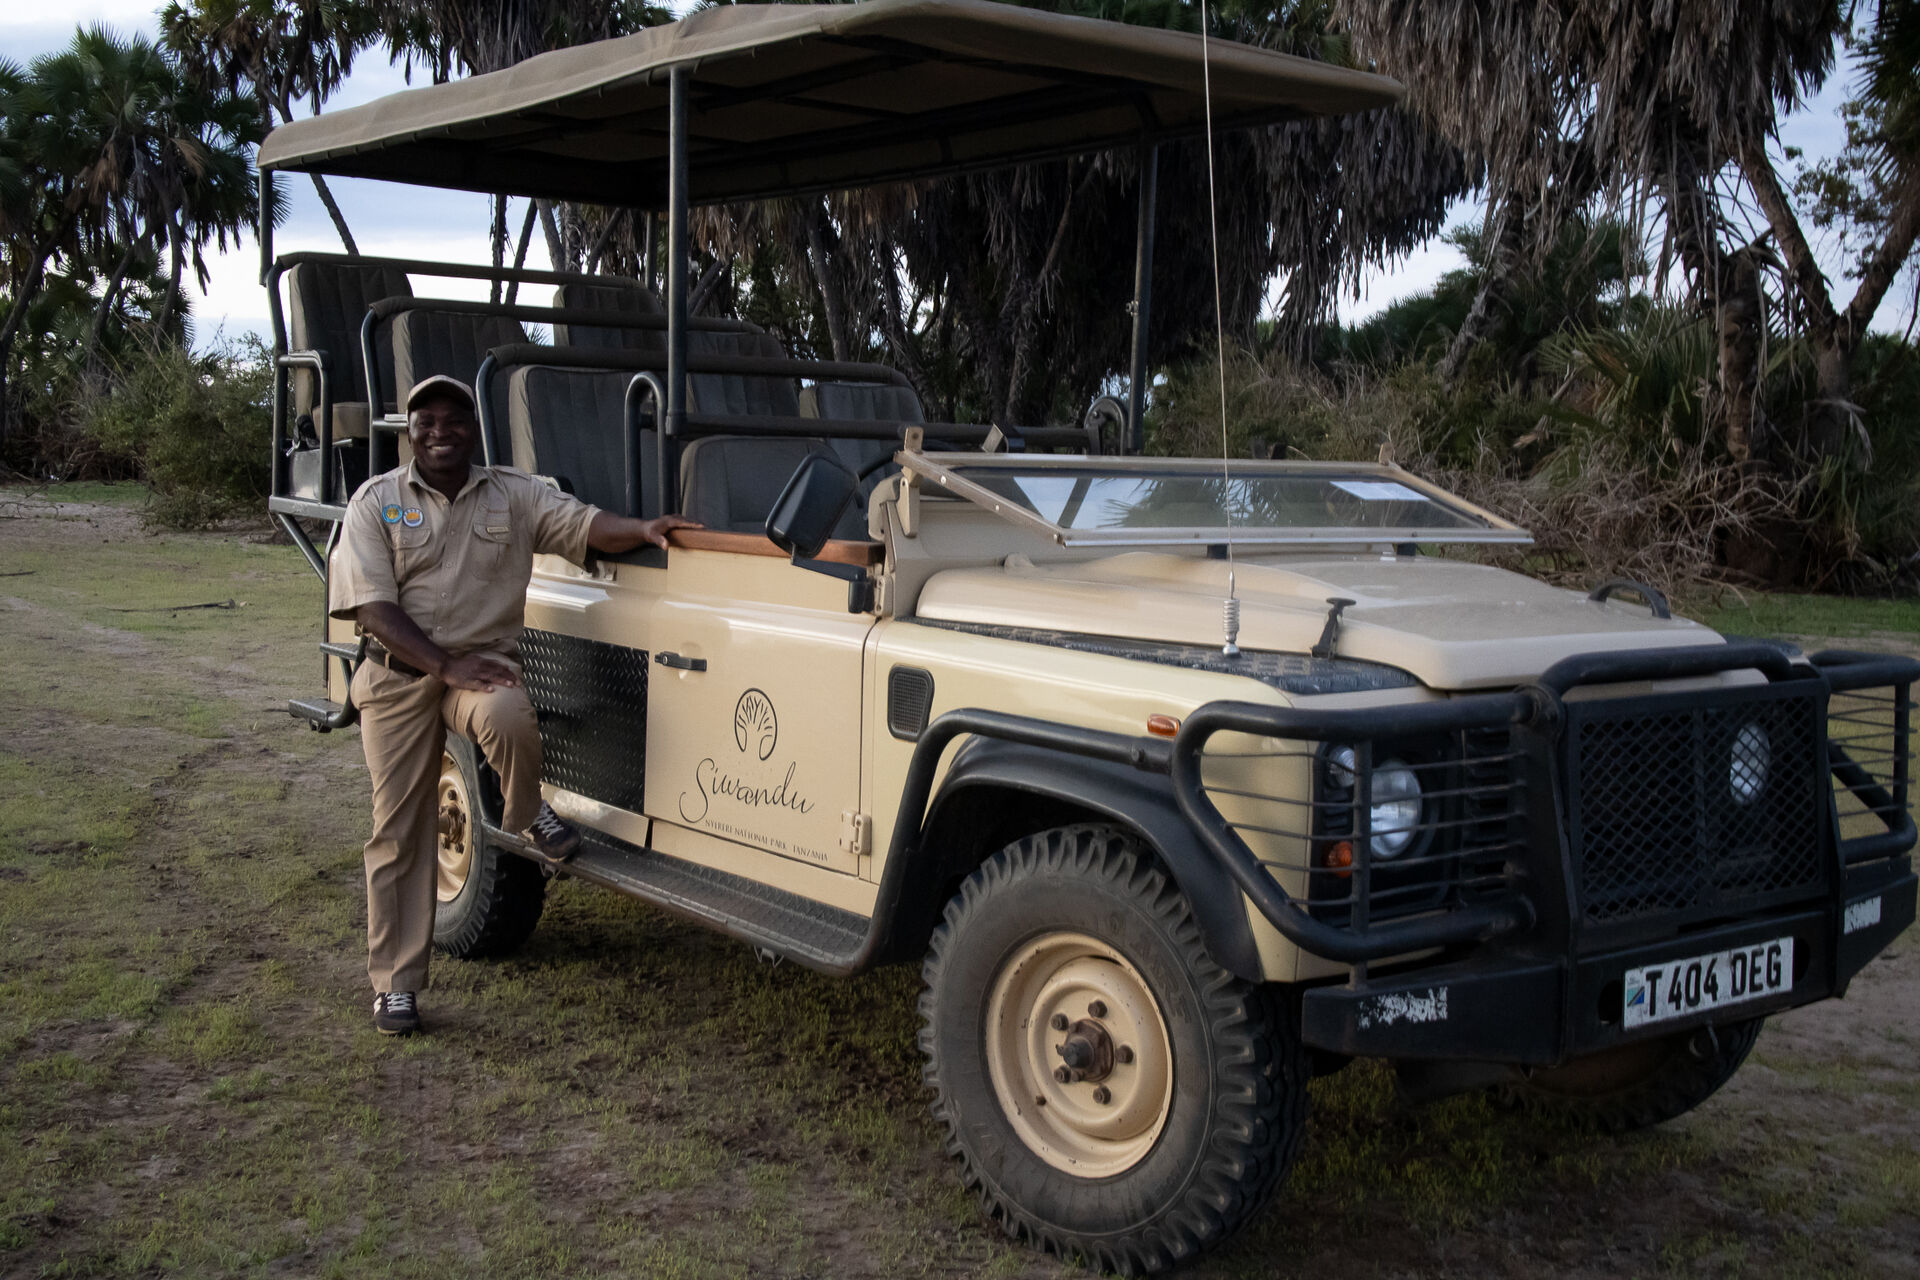 Camps inside Nyerere National Park